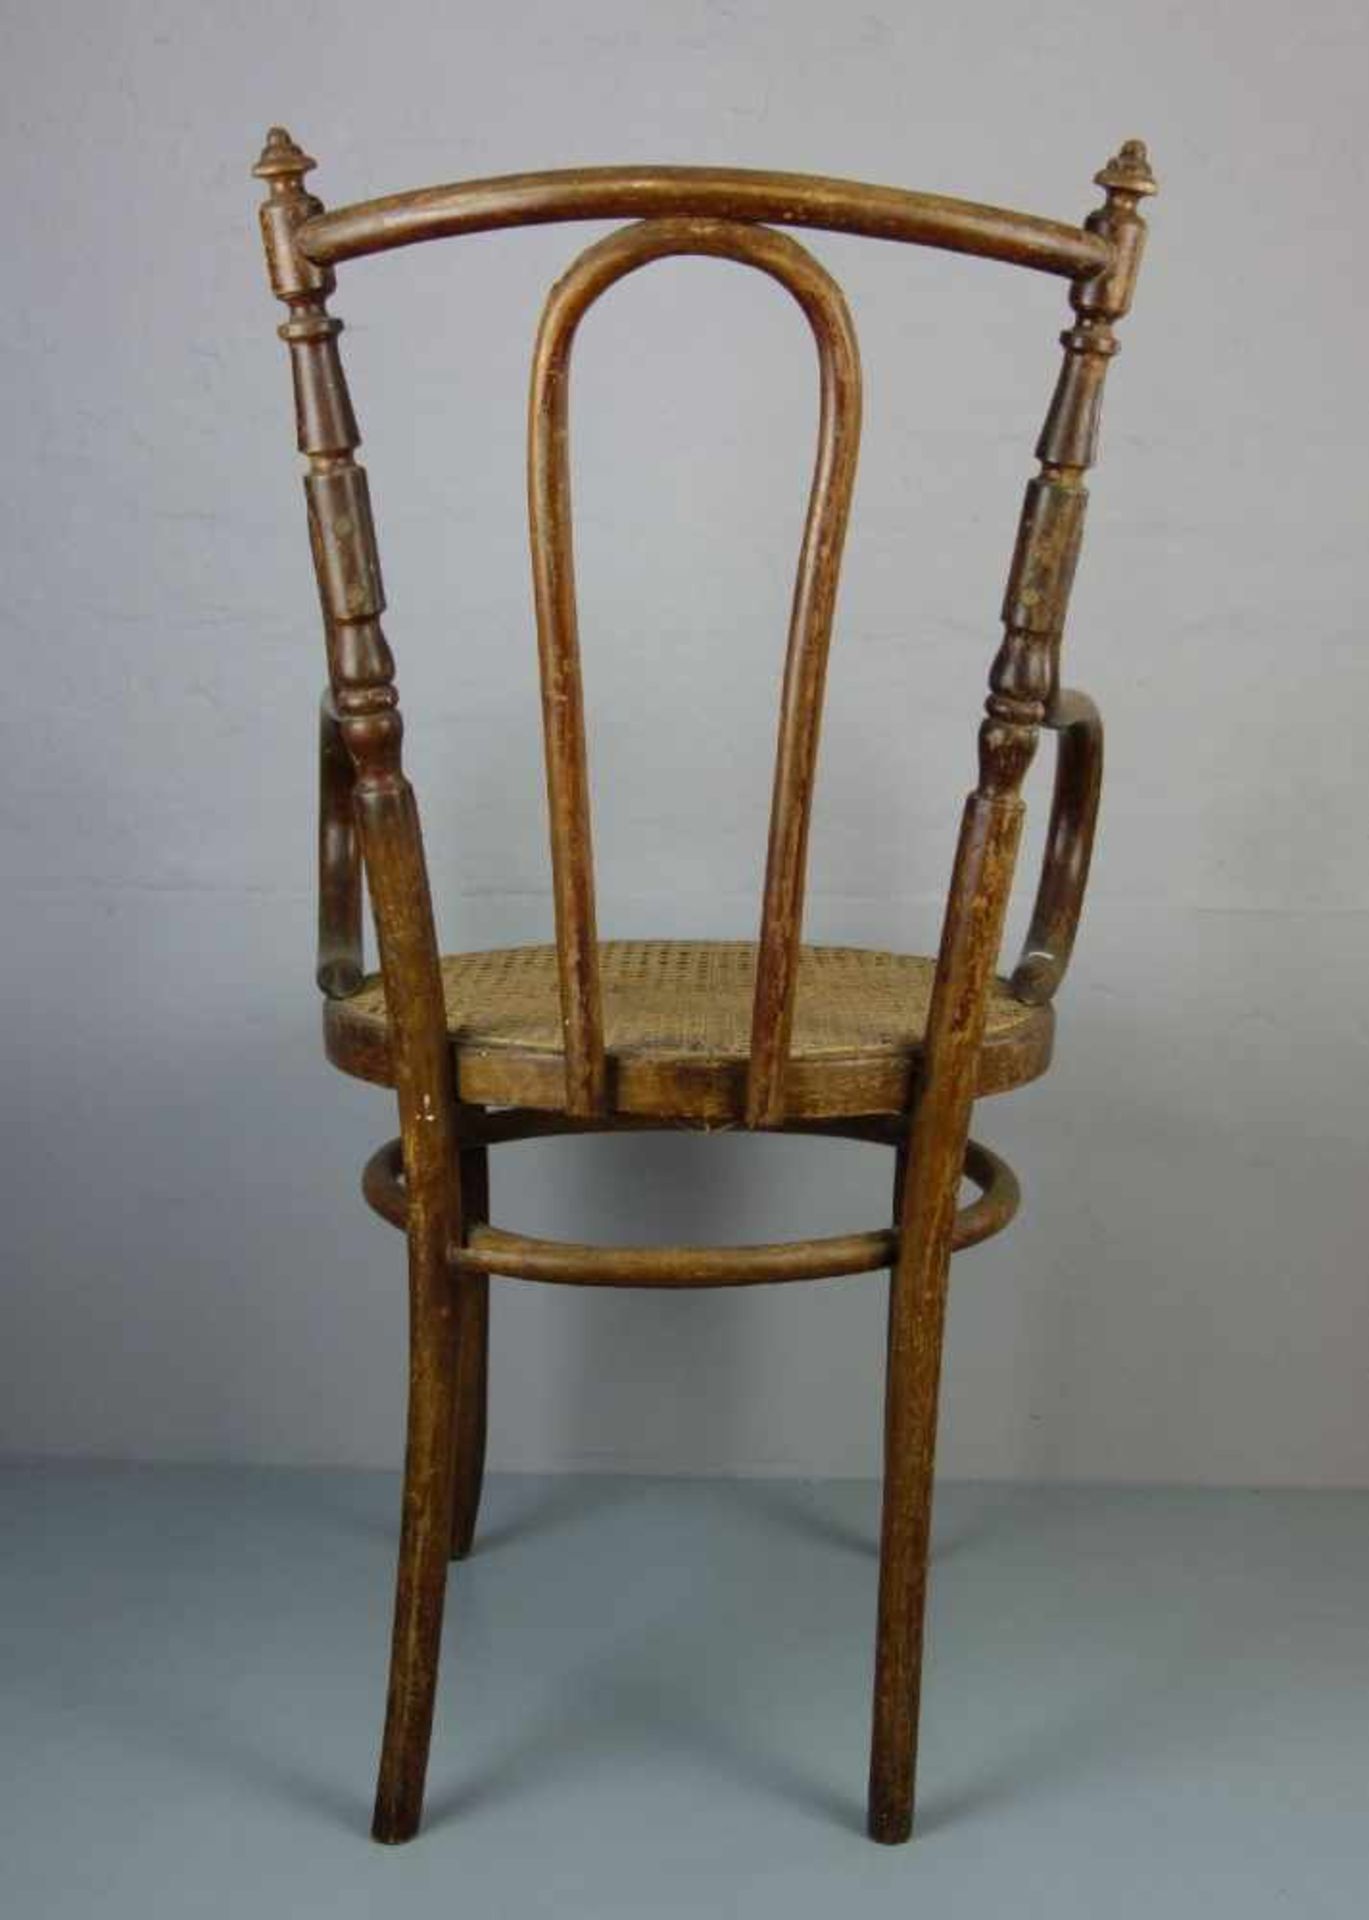 BUGHOLZSTUHL in der Art des Thonet-Stuhls Modell-Nr. 3065. Runde Sitzfläche mit Geflecht auf - Image 3 of 3